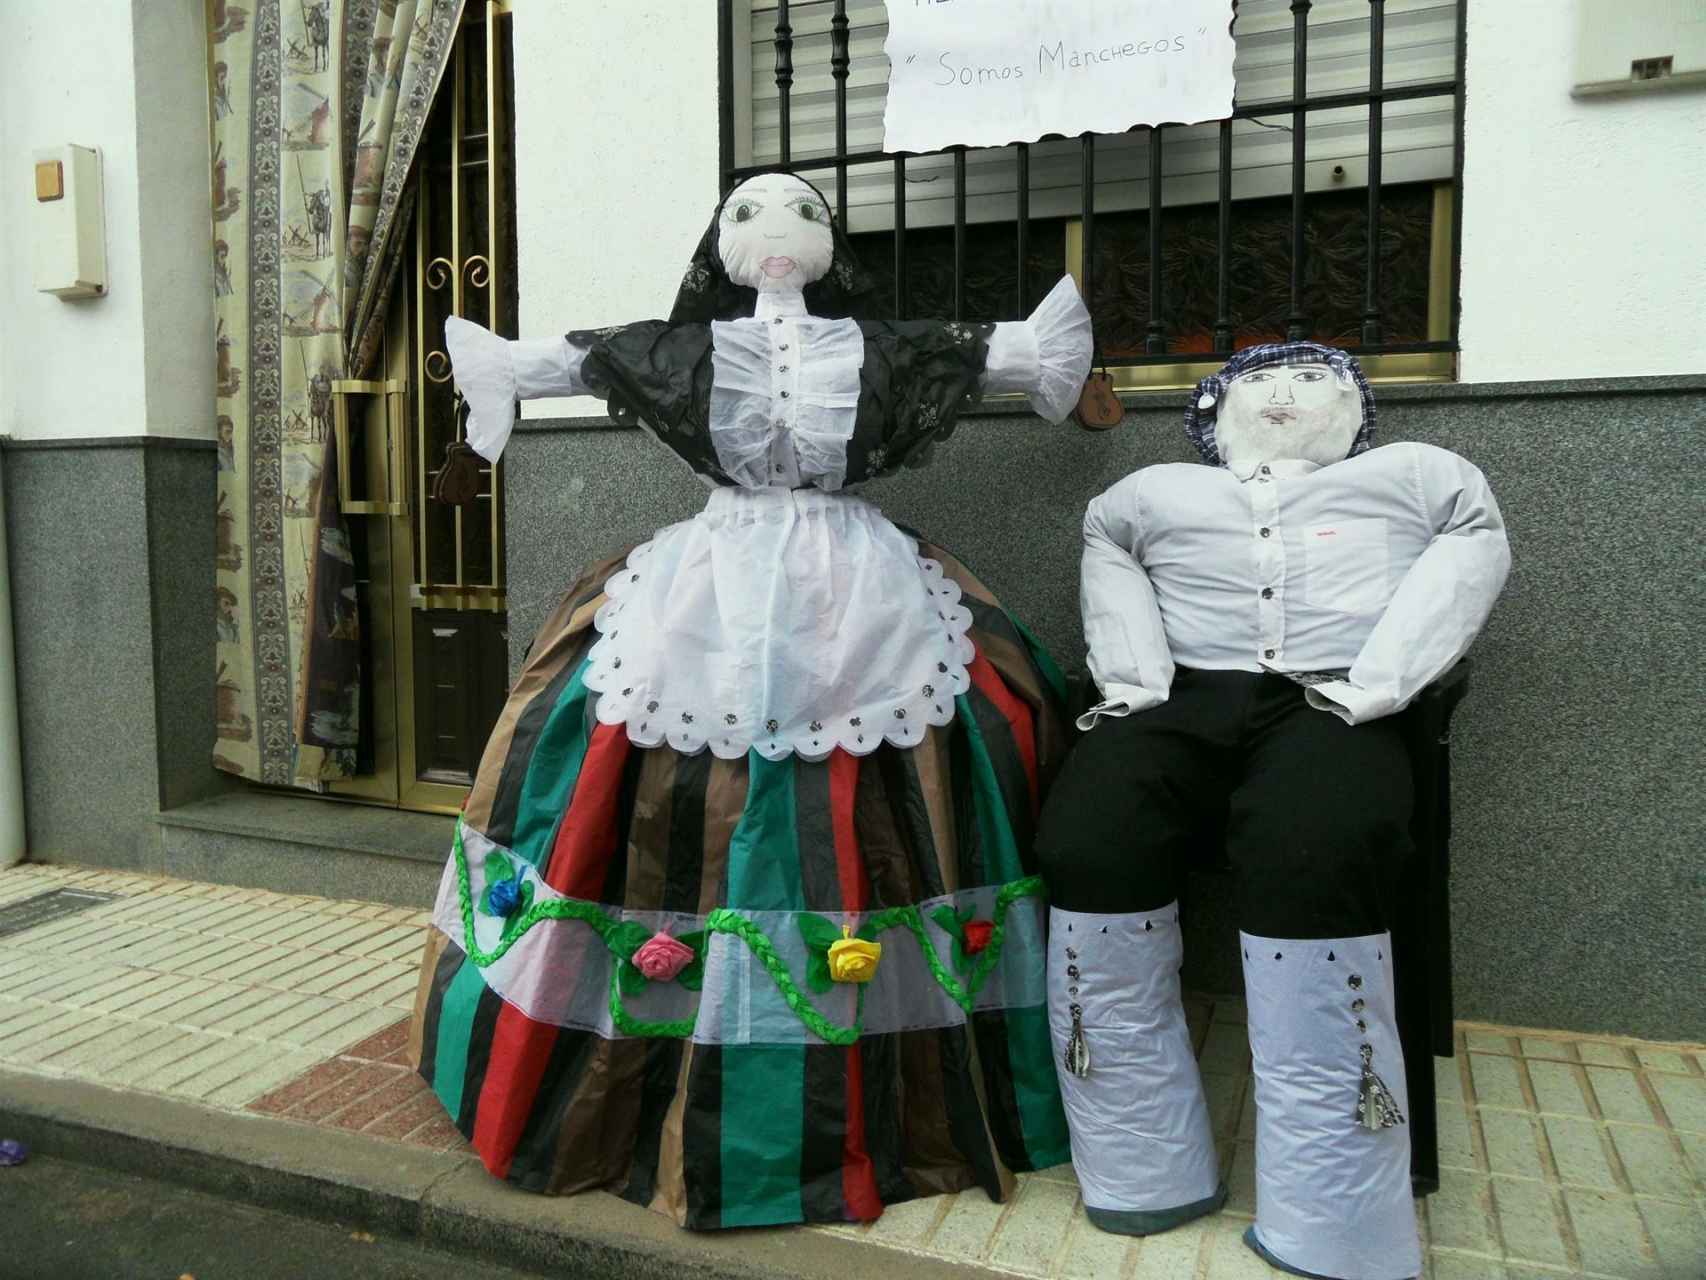 Los Judas y Muñecas de Alamillo ya son de Interés Turístico Regional. Foto: Turismo Castilla-La Mancha